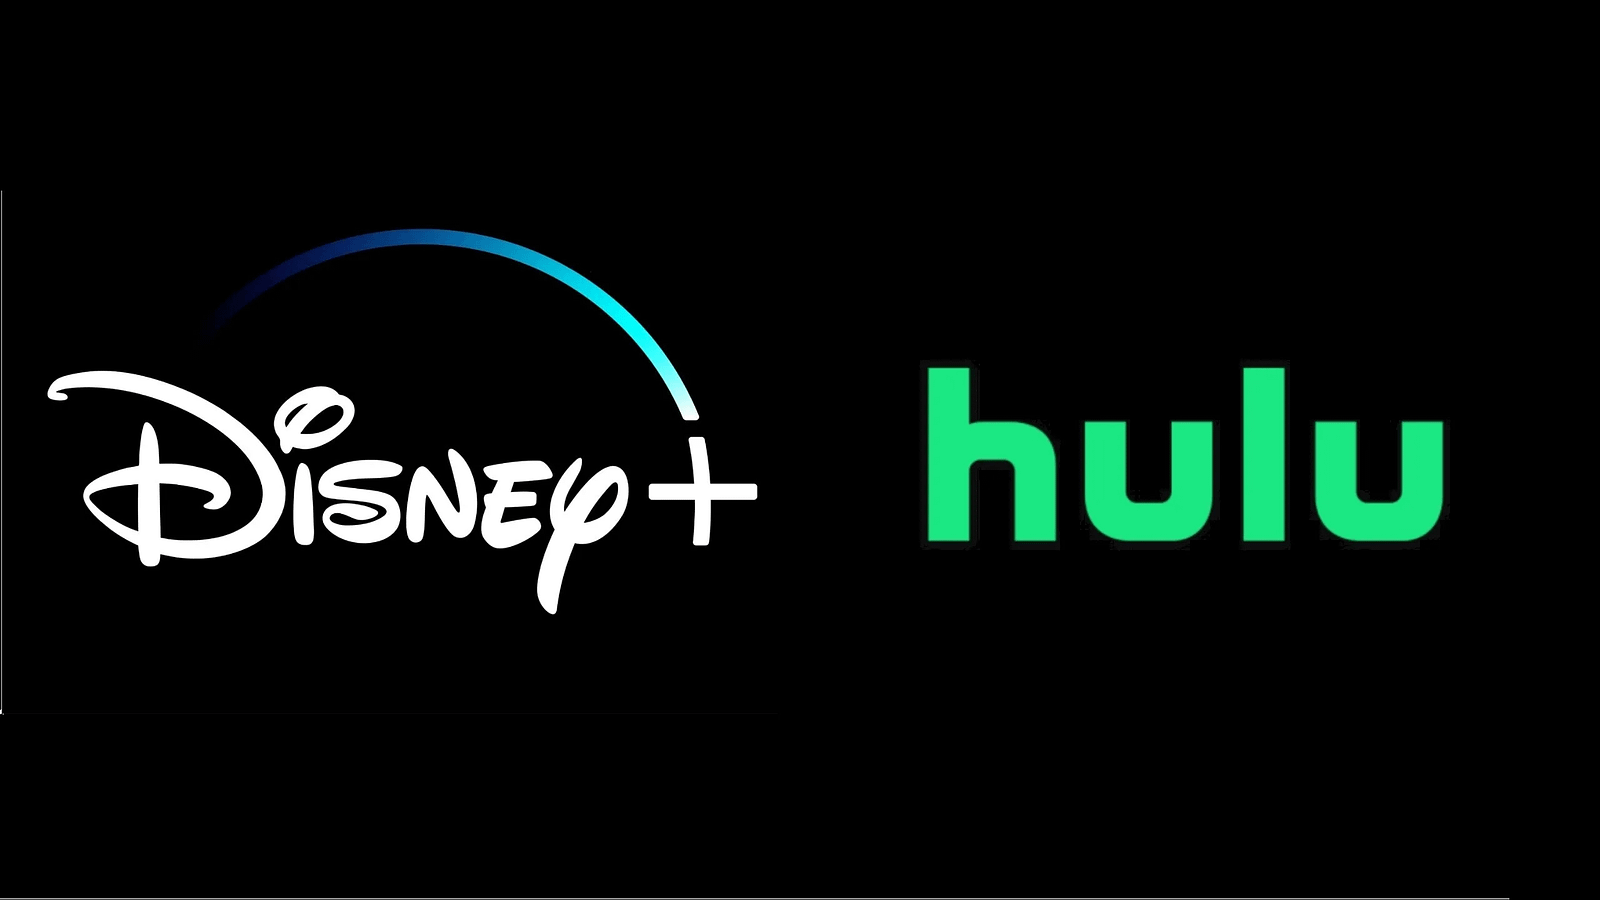 Disney Plus commence a tester l'intégration des programmes Hulu sur sa plateforme